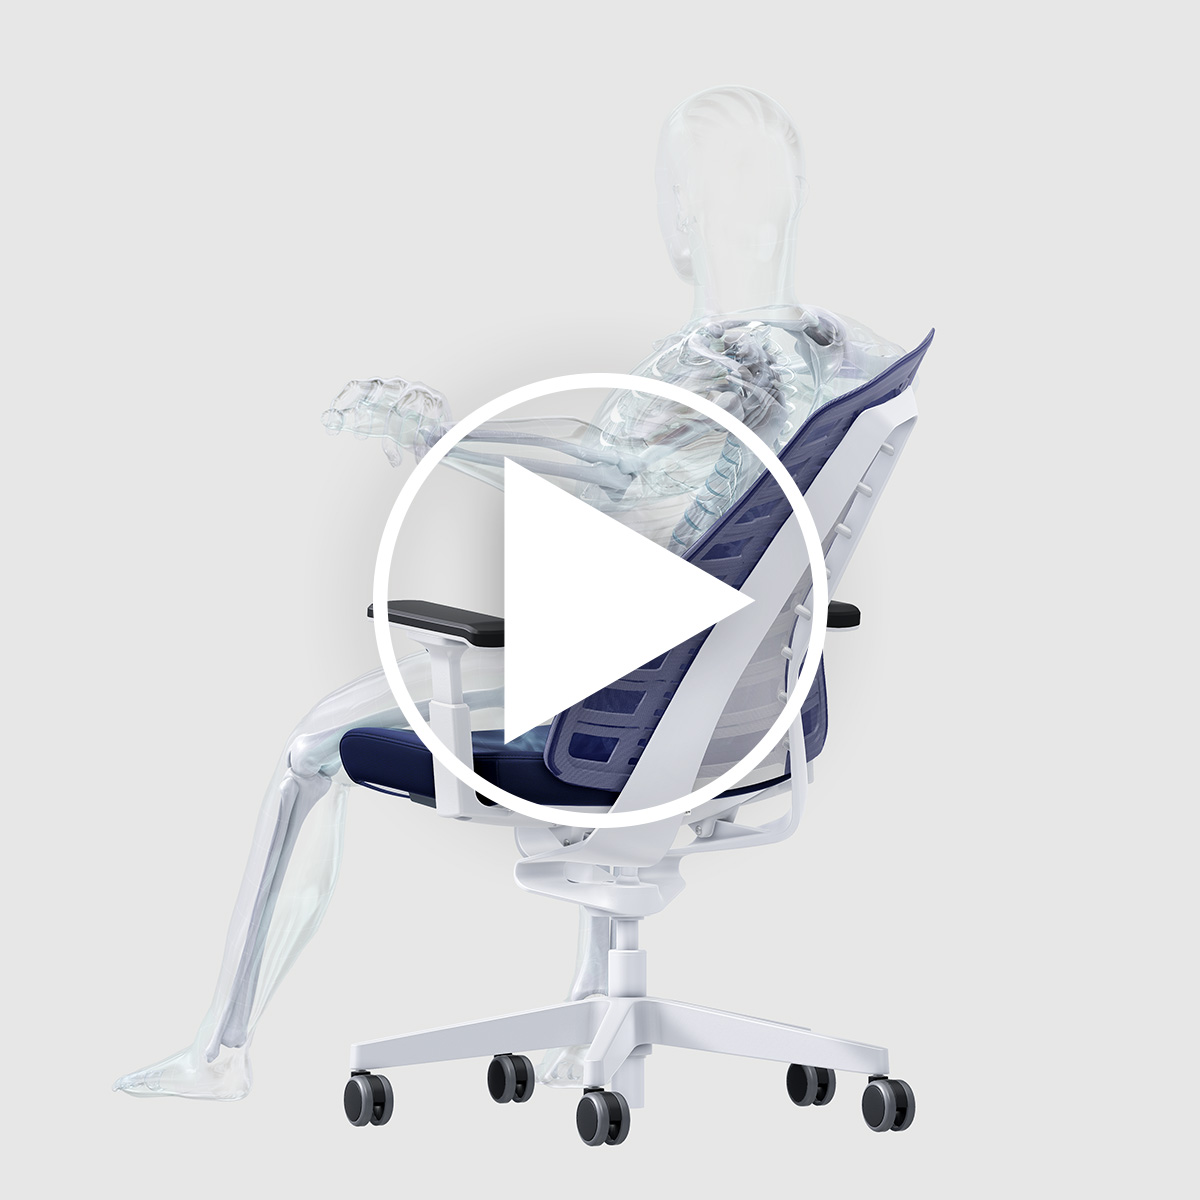 Vídeo en el que se exponen los tres factores para la propia salud y ergonomía utilizando como ejemplo una persona en la silla de escritorio PURE.